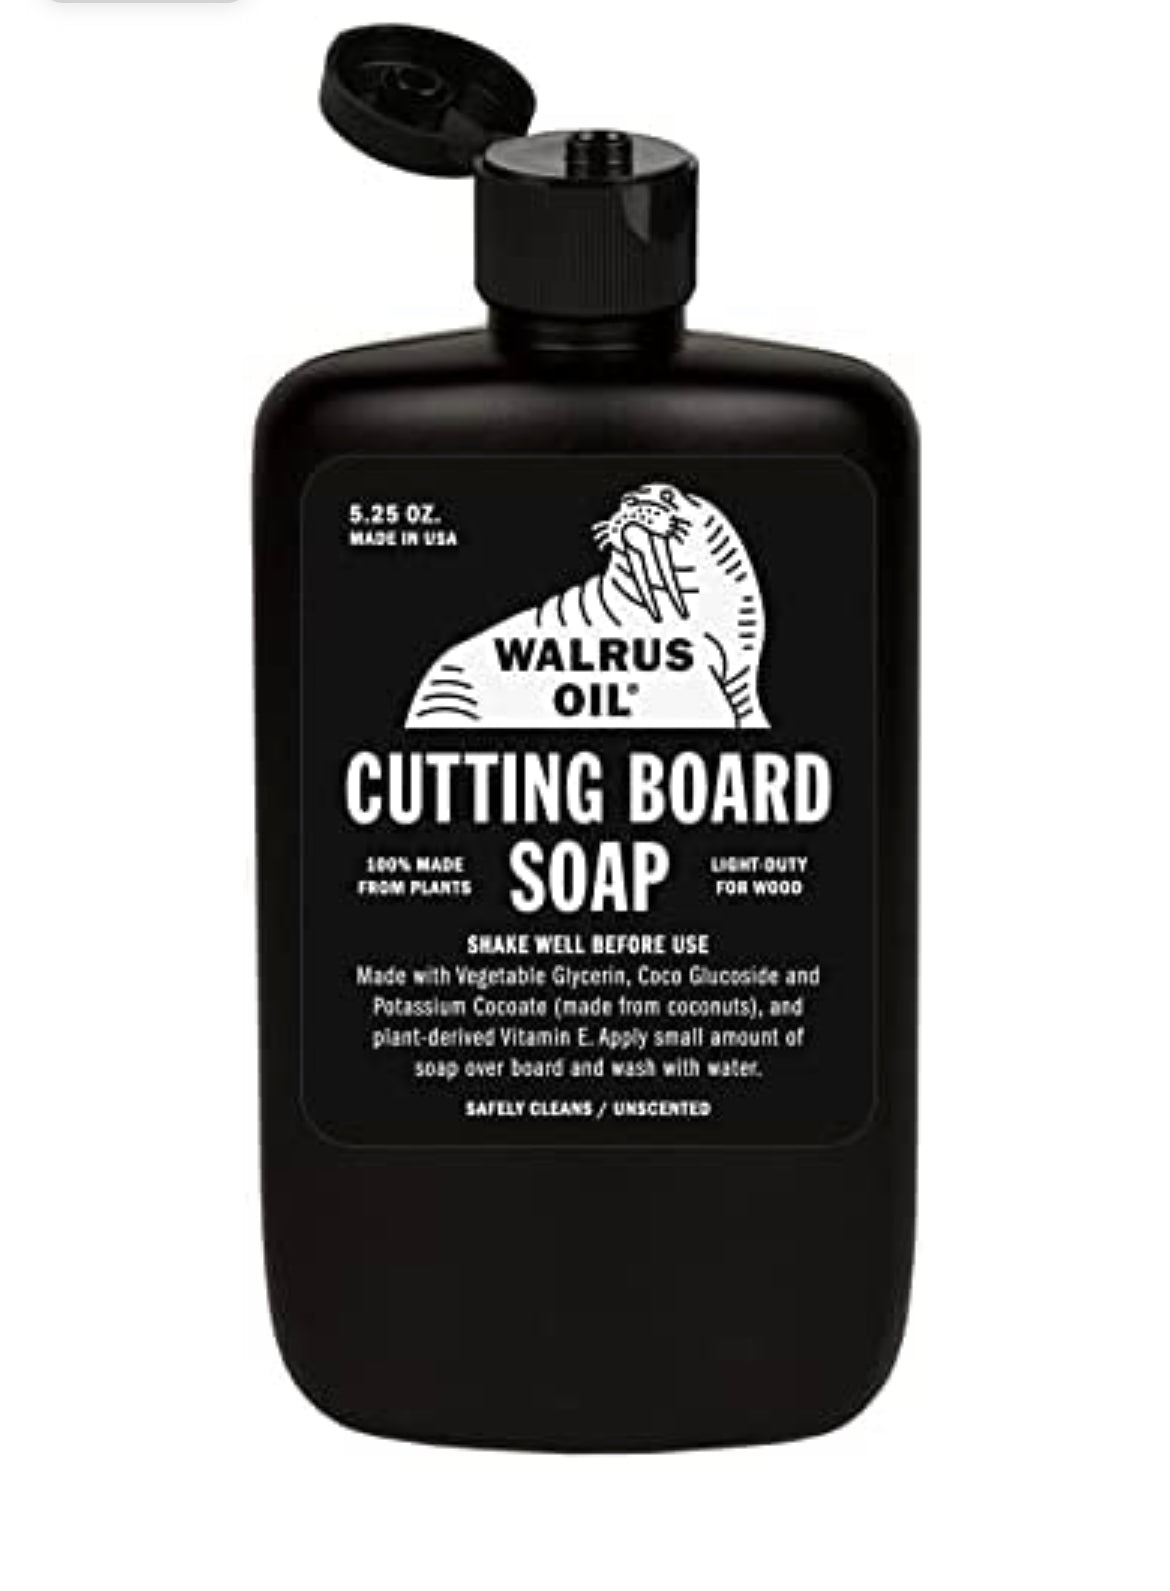 Walrus Oil Cutting Board Soap